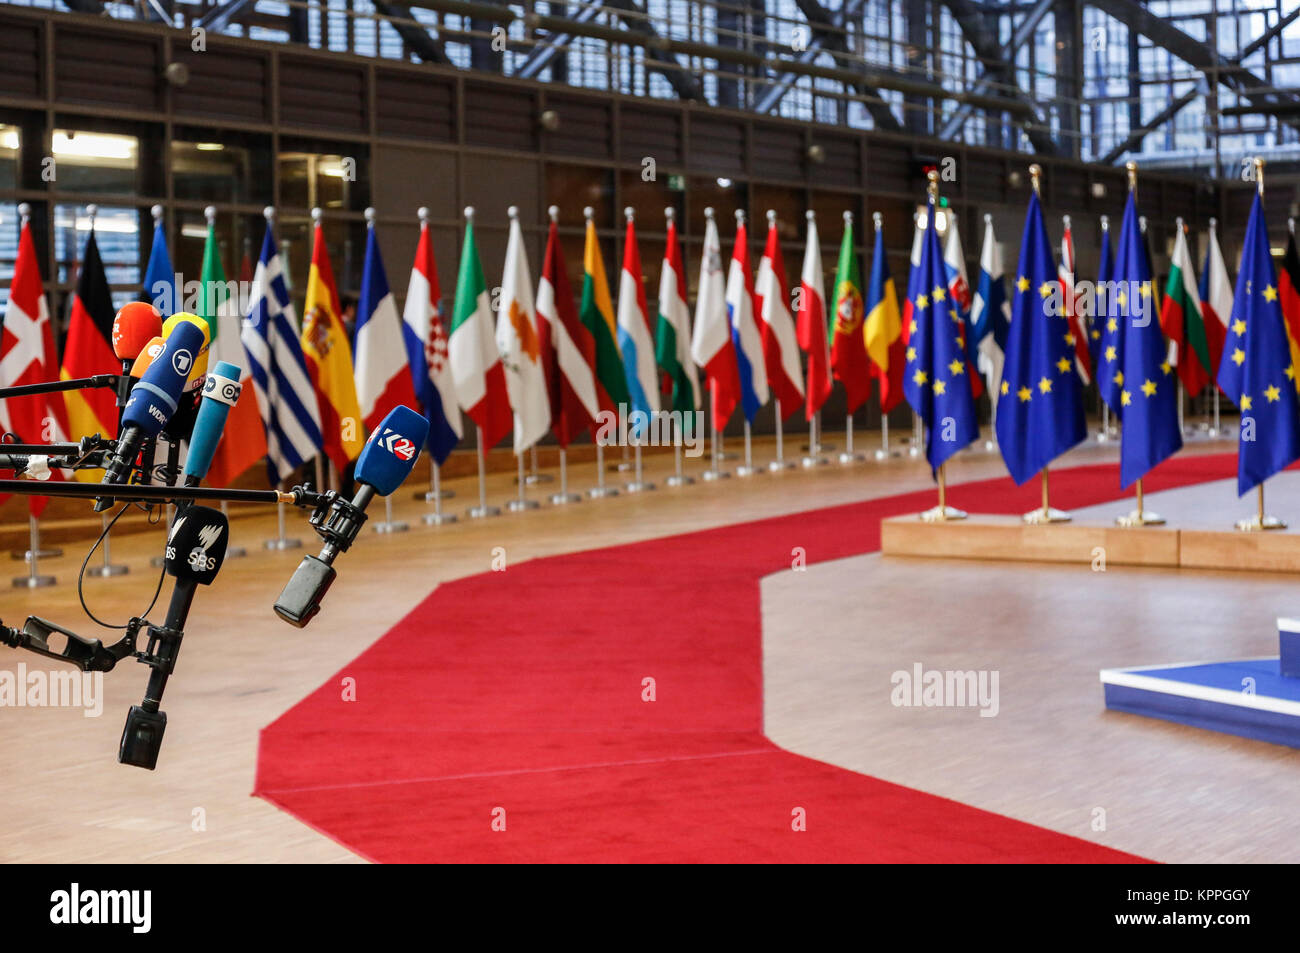 Bruxelles, Belgique, le 14 décembre 2017 : tapis rouge de Europa bâtiment dans l'UE lors du sommet européen. Banque D'Images